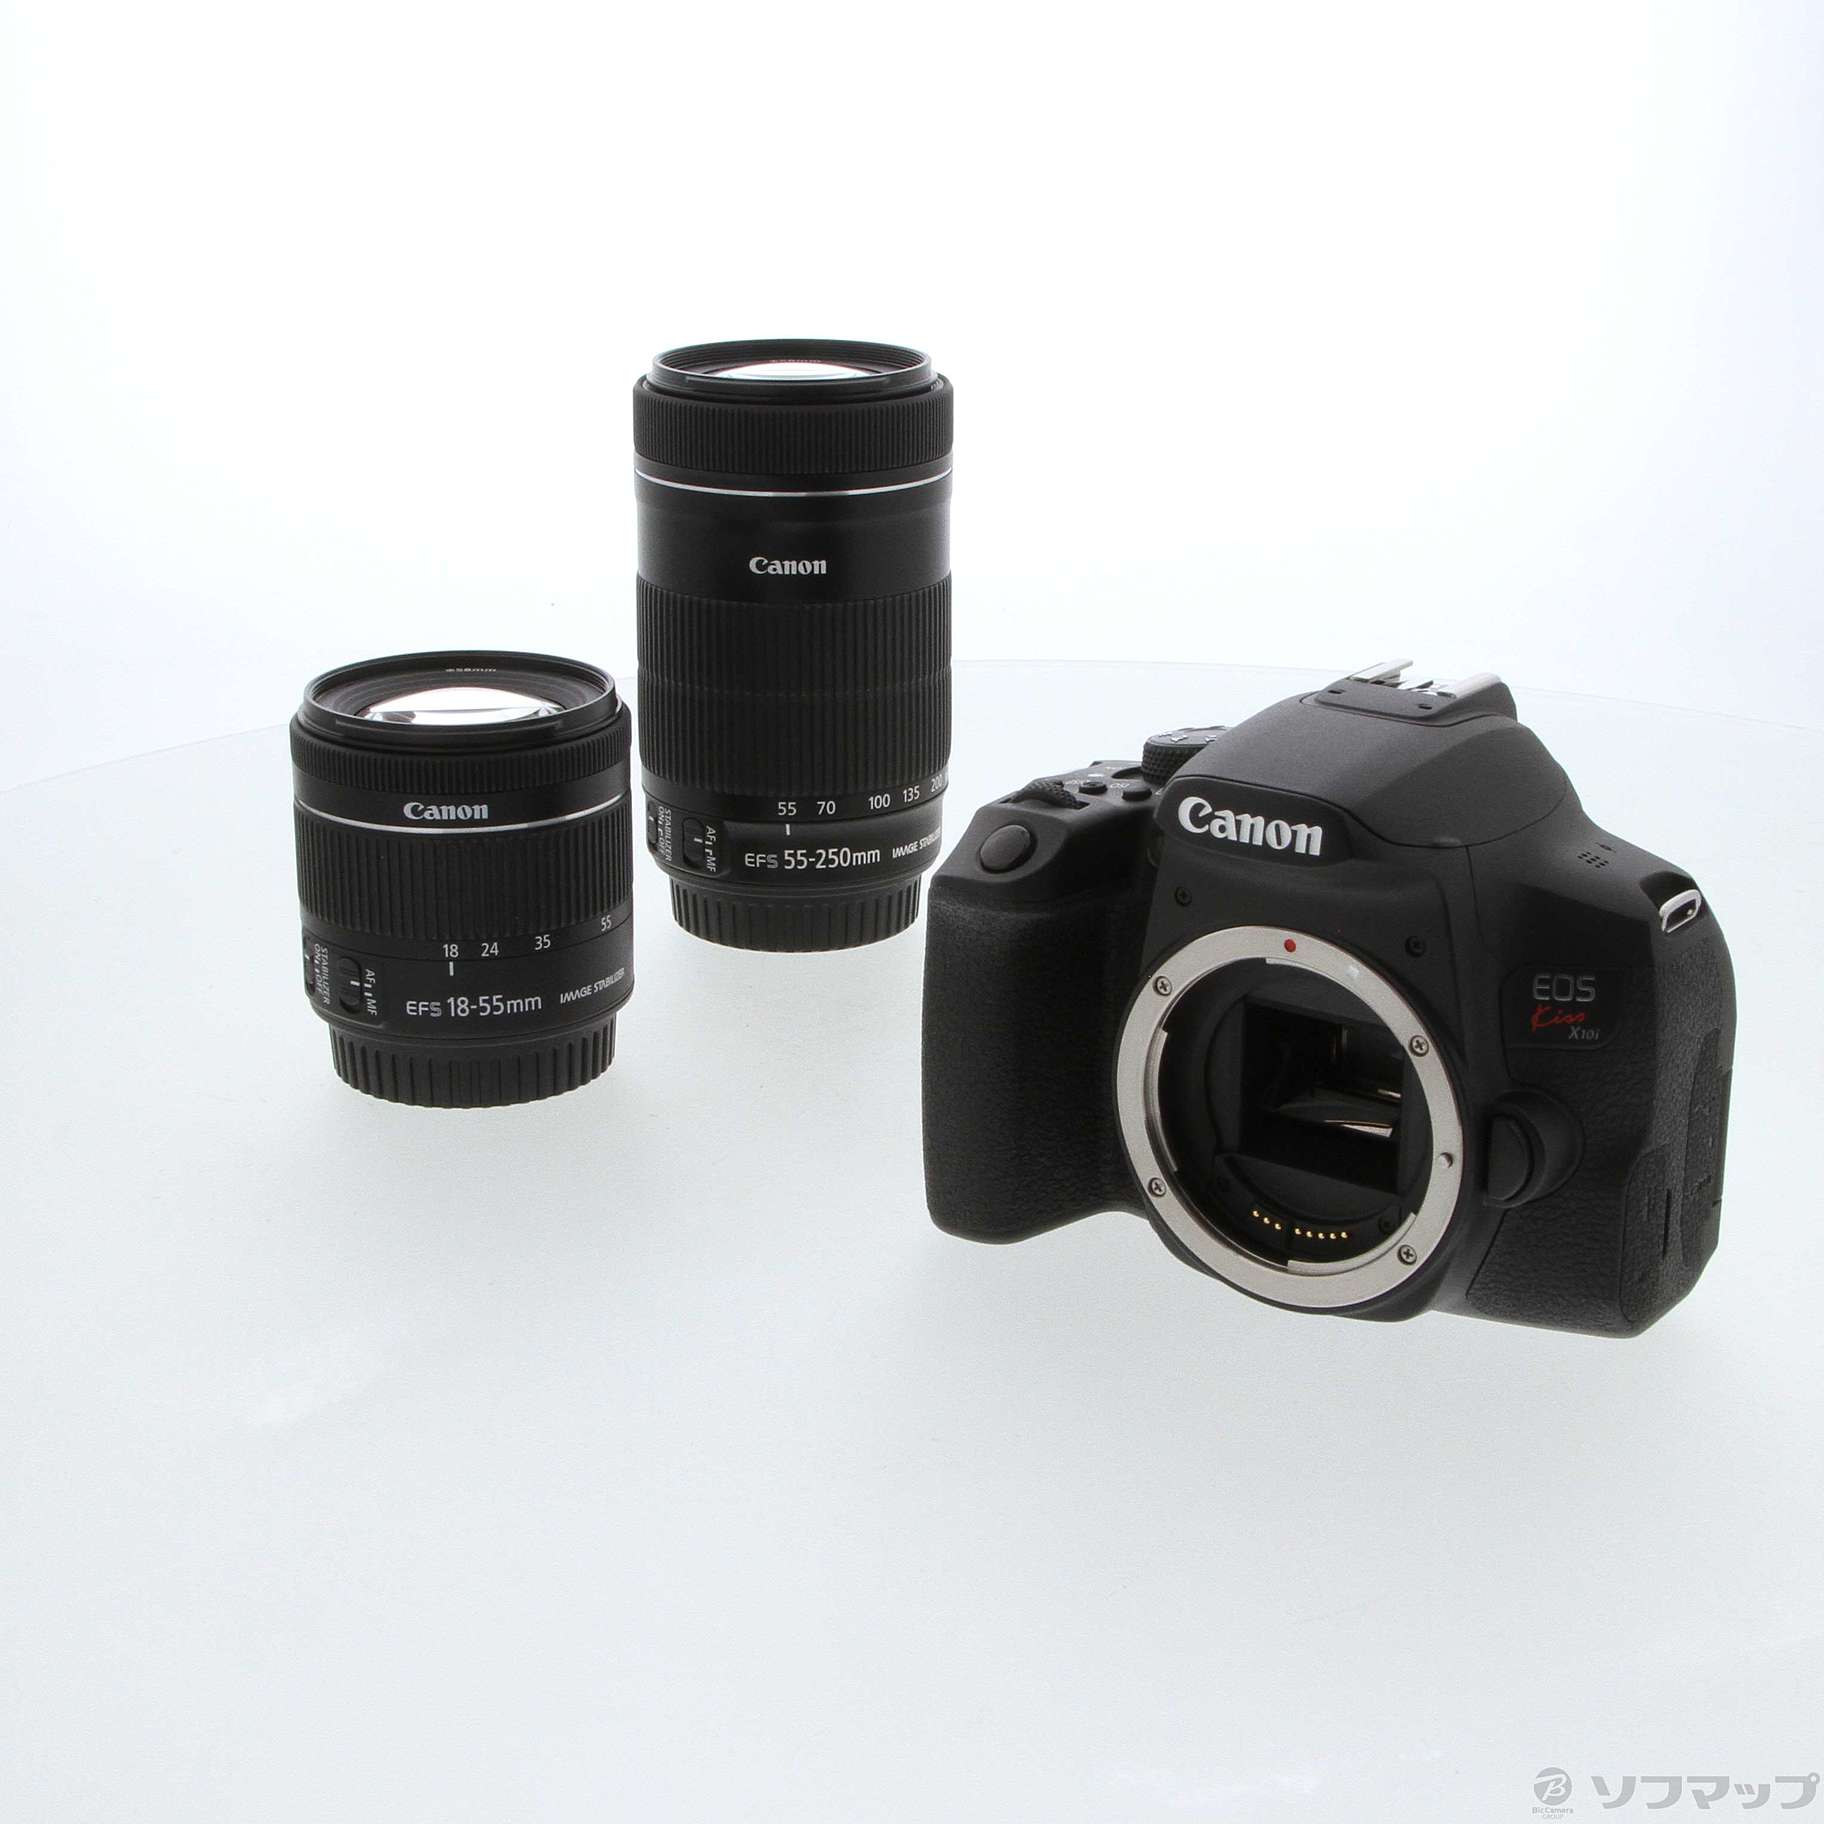 Canon EOS Kiss X10i ダブルズーム(新品・未使用品)